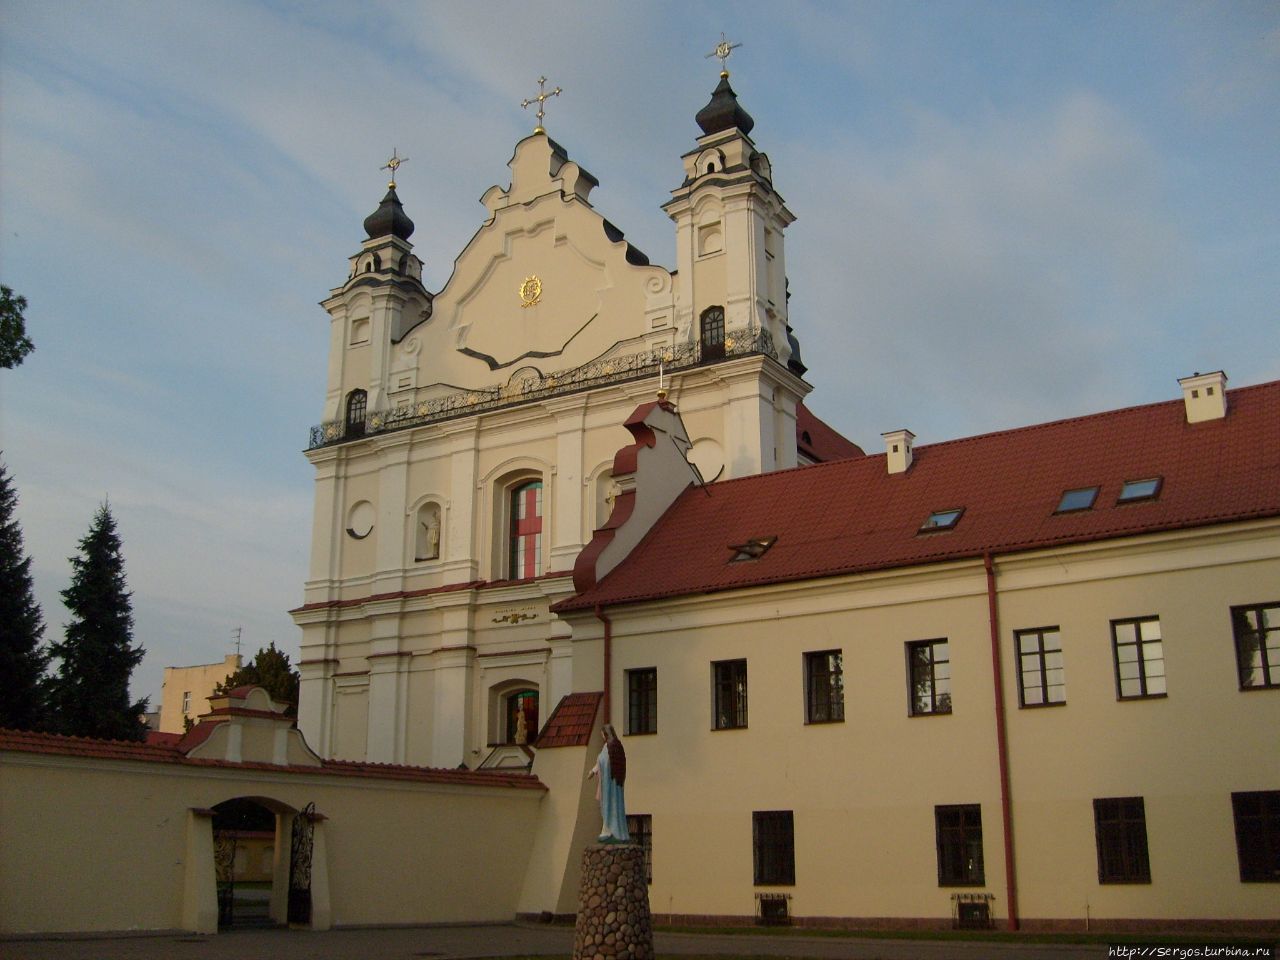 Basilica minor (т.е. превелегированная среди прочих) Беларусь